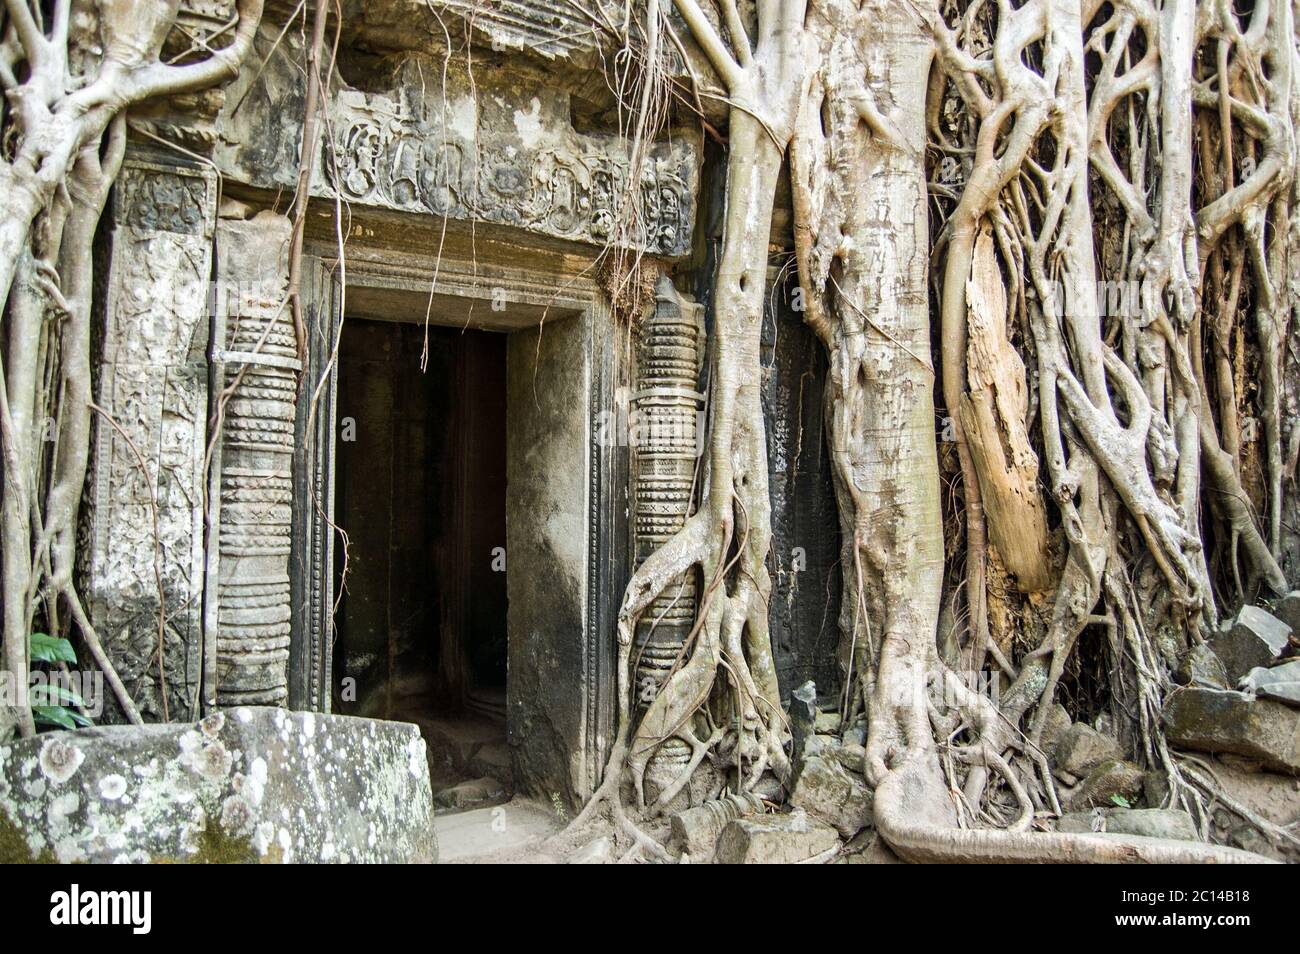 Porta sopravfatta nel Tempio Khmer in rovina di Ta Prohm, conosciuto come Tempio dell'albero. Angkor, Siem Reap, Cambogia. Kapok e fichi sacri crescono attraverso di loro Foto Stock